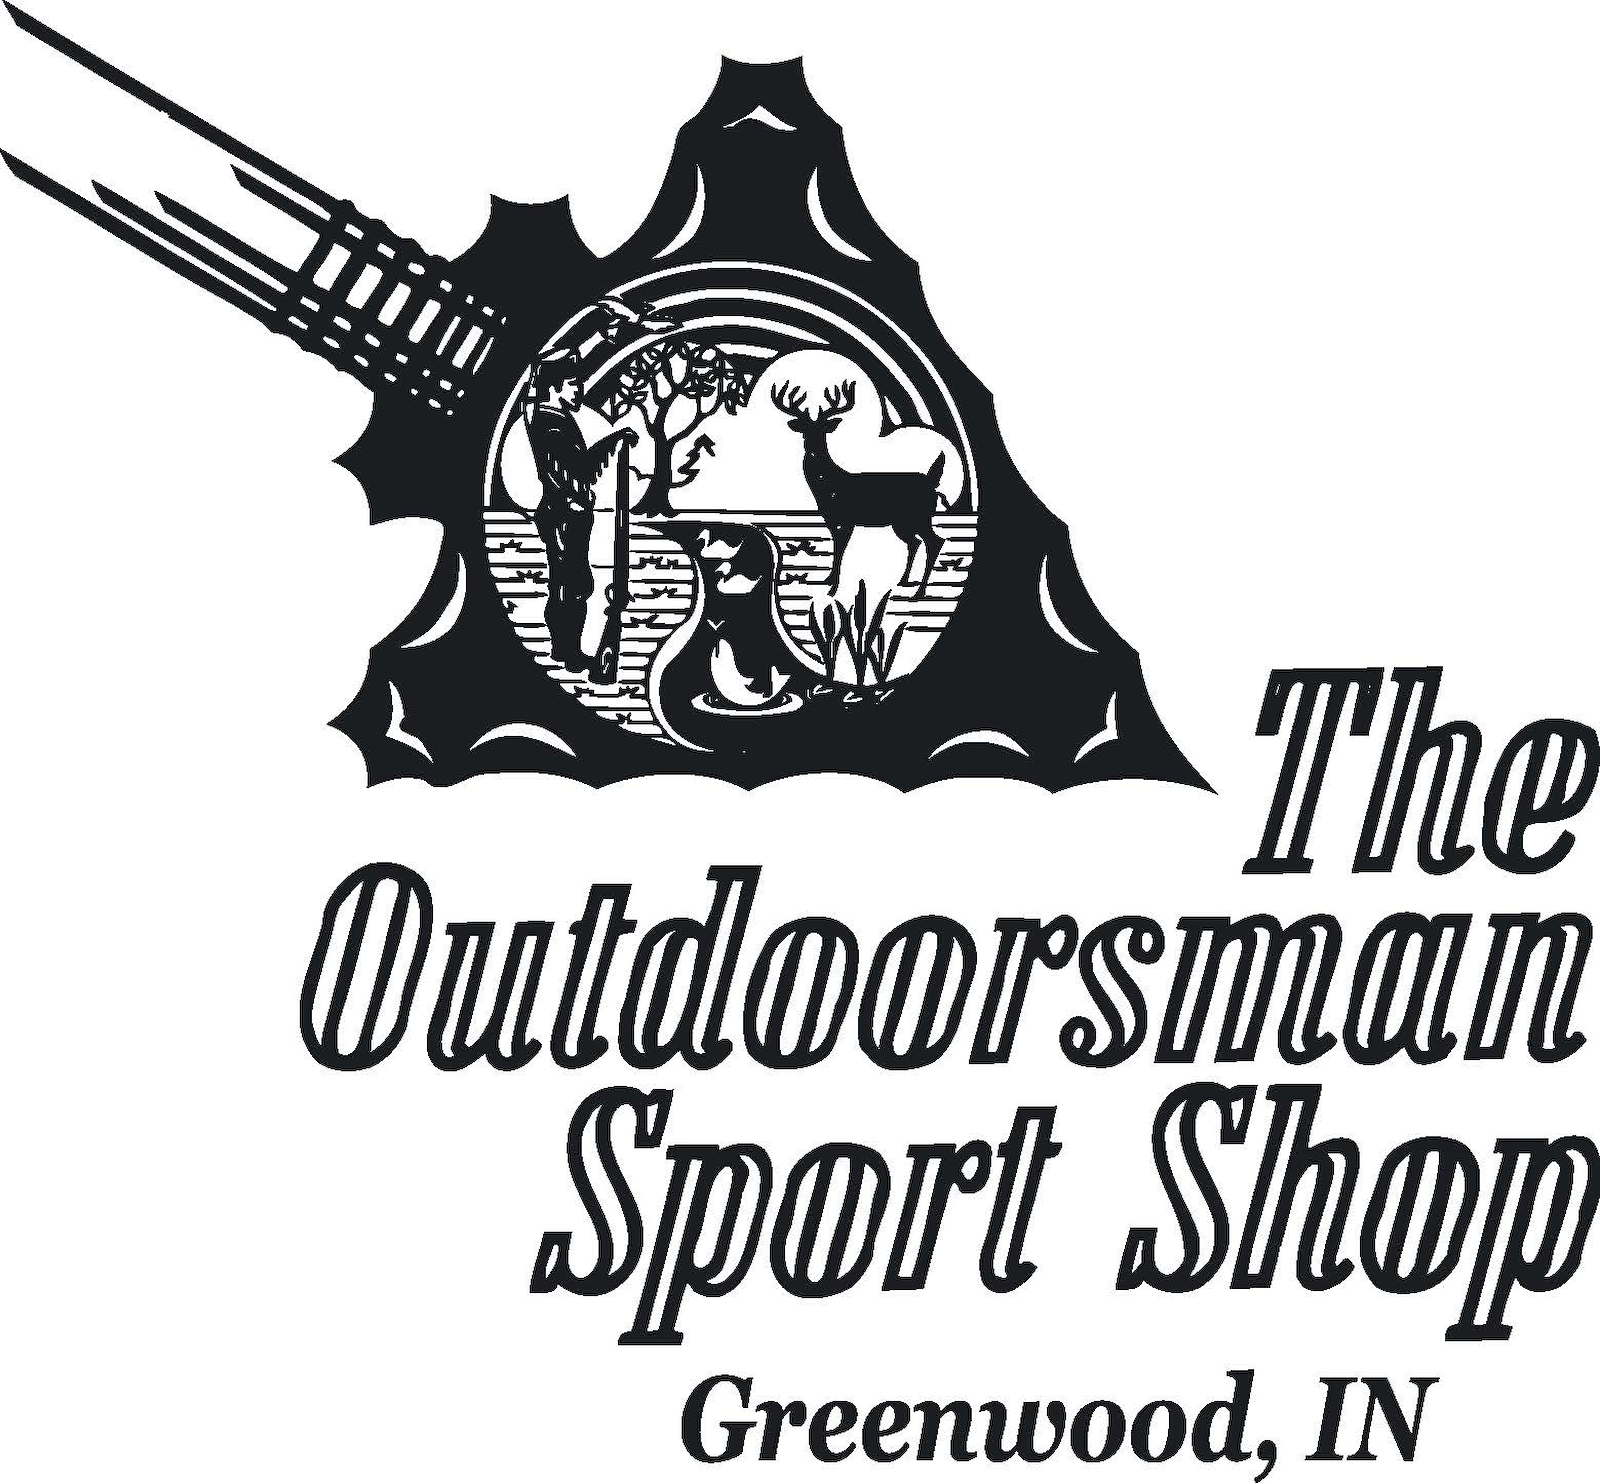 The Outdoorsman Sport Shop